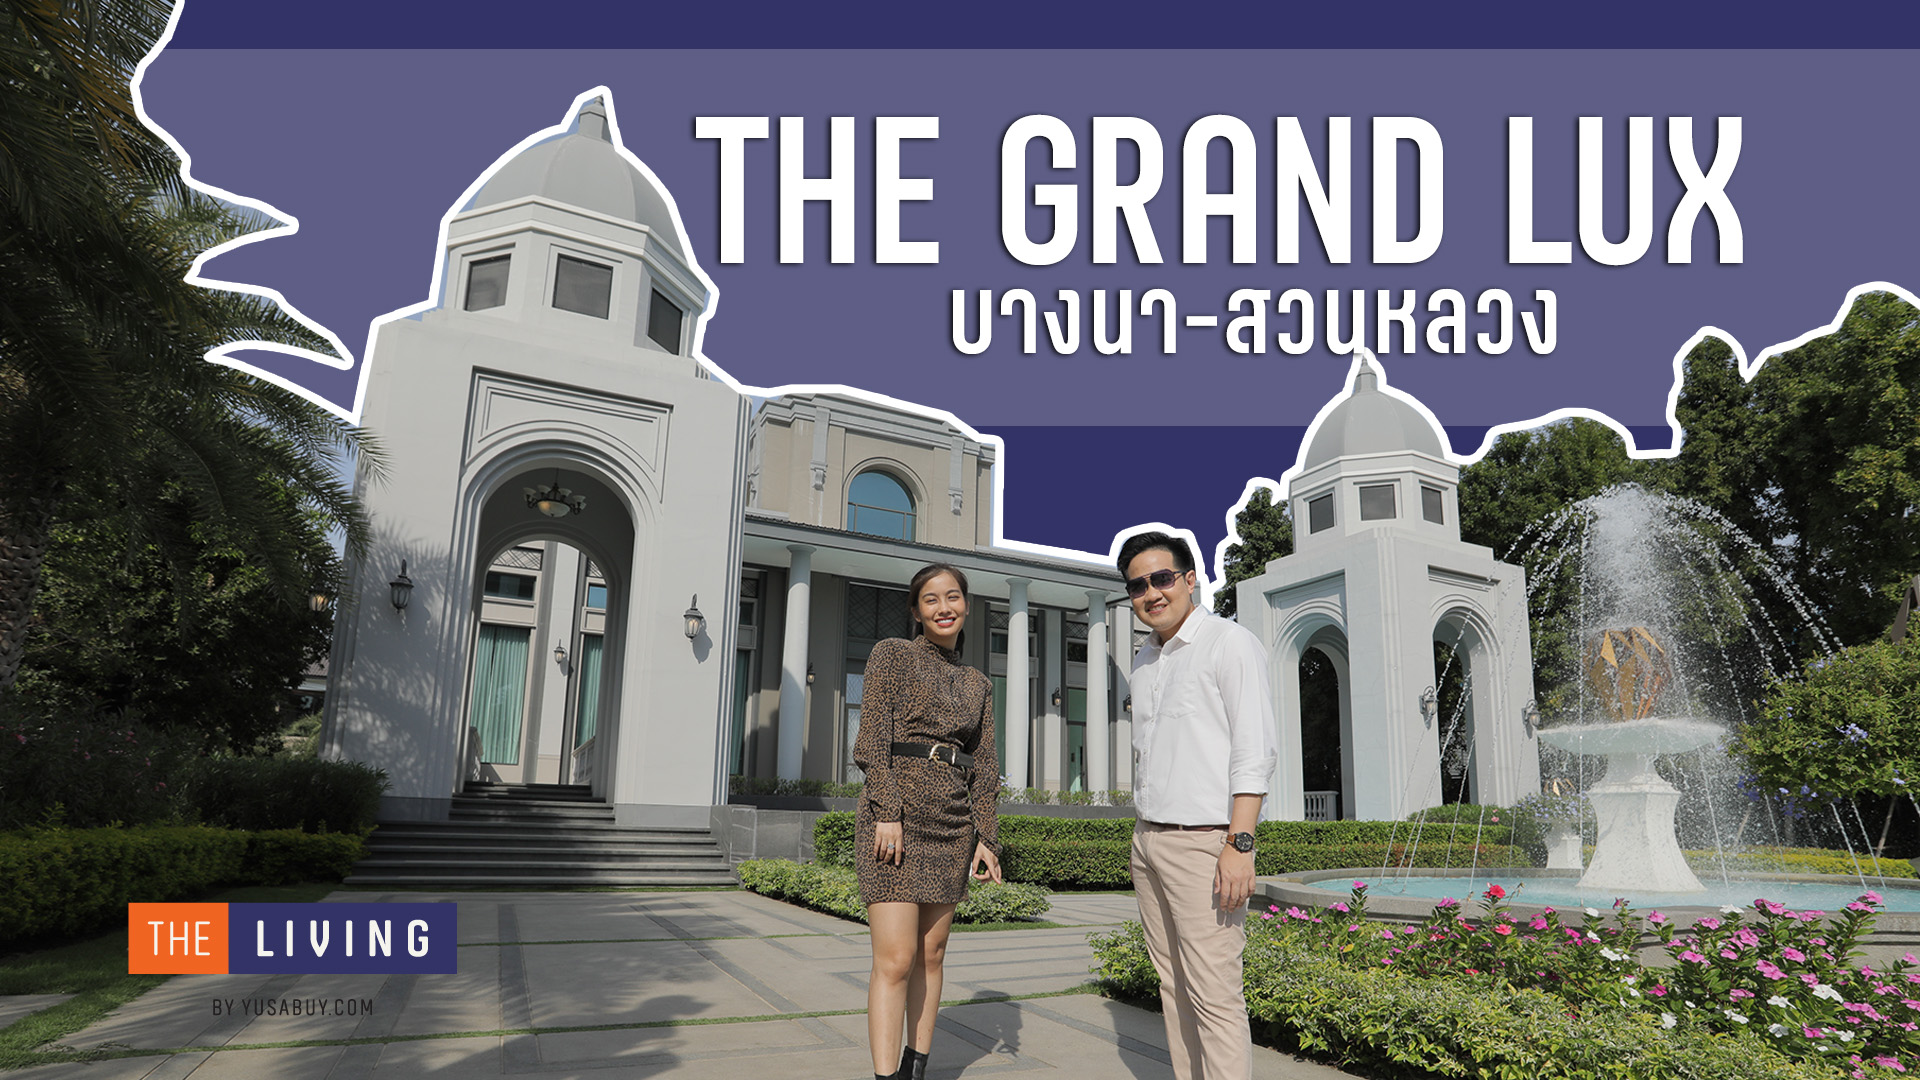 รีวิว The Grand Lux บางนา-สวนหลวง บ้านหรูสไตล์ Modern Luxury ราคา 17-40 ล้าน